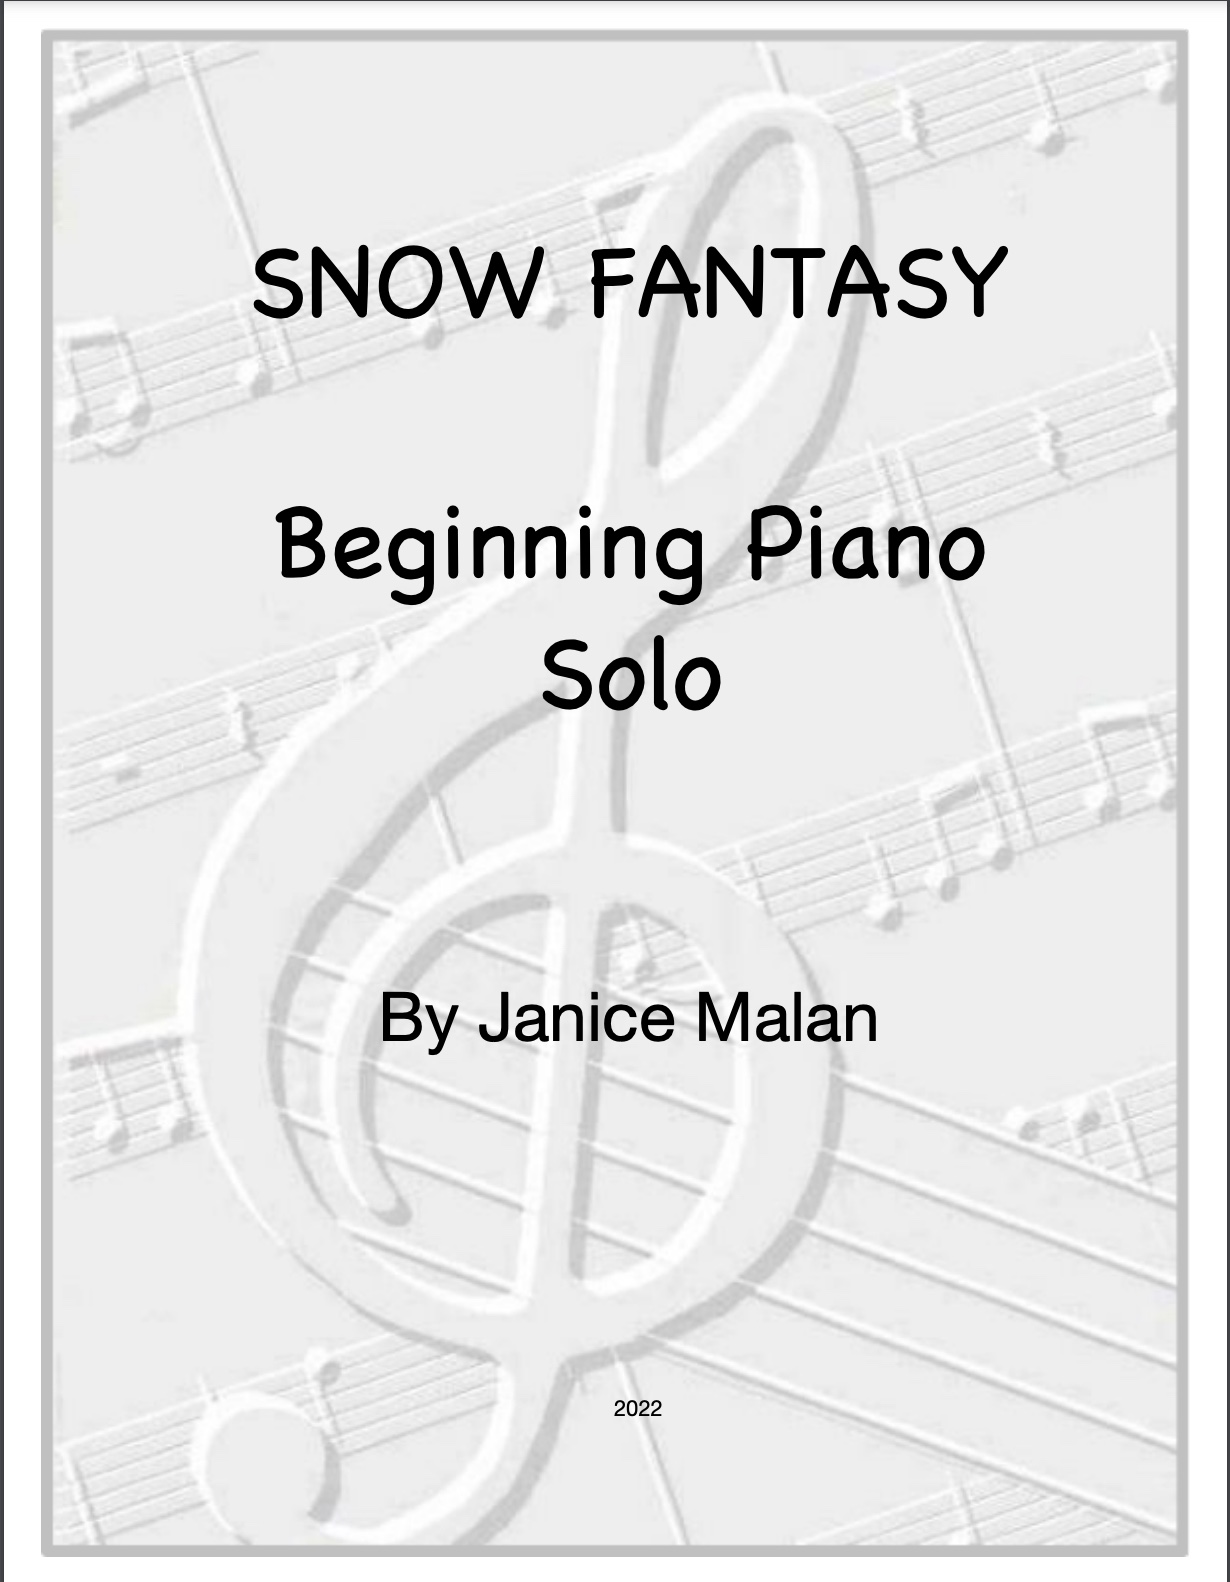 Snow Fantasy – Beginning Piano Solo